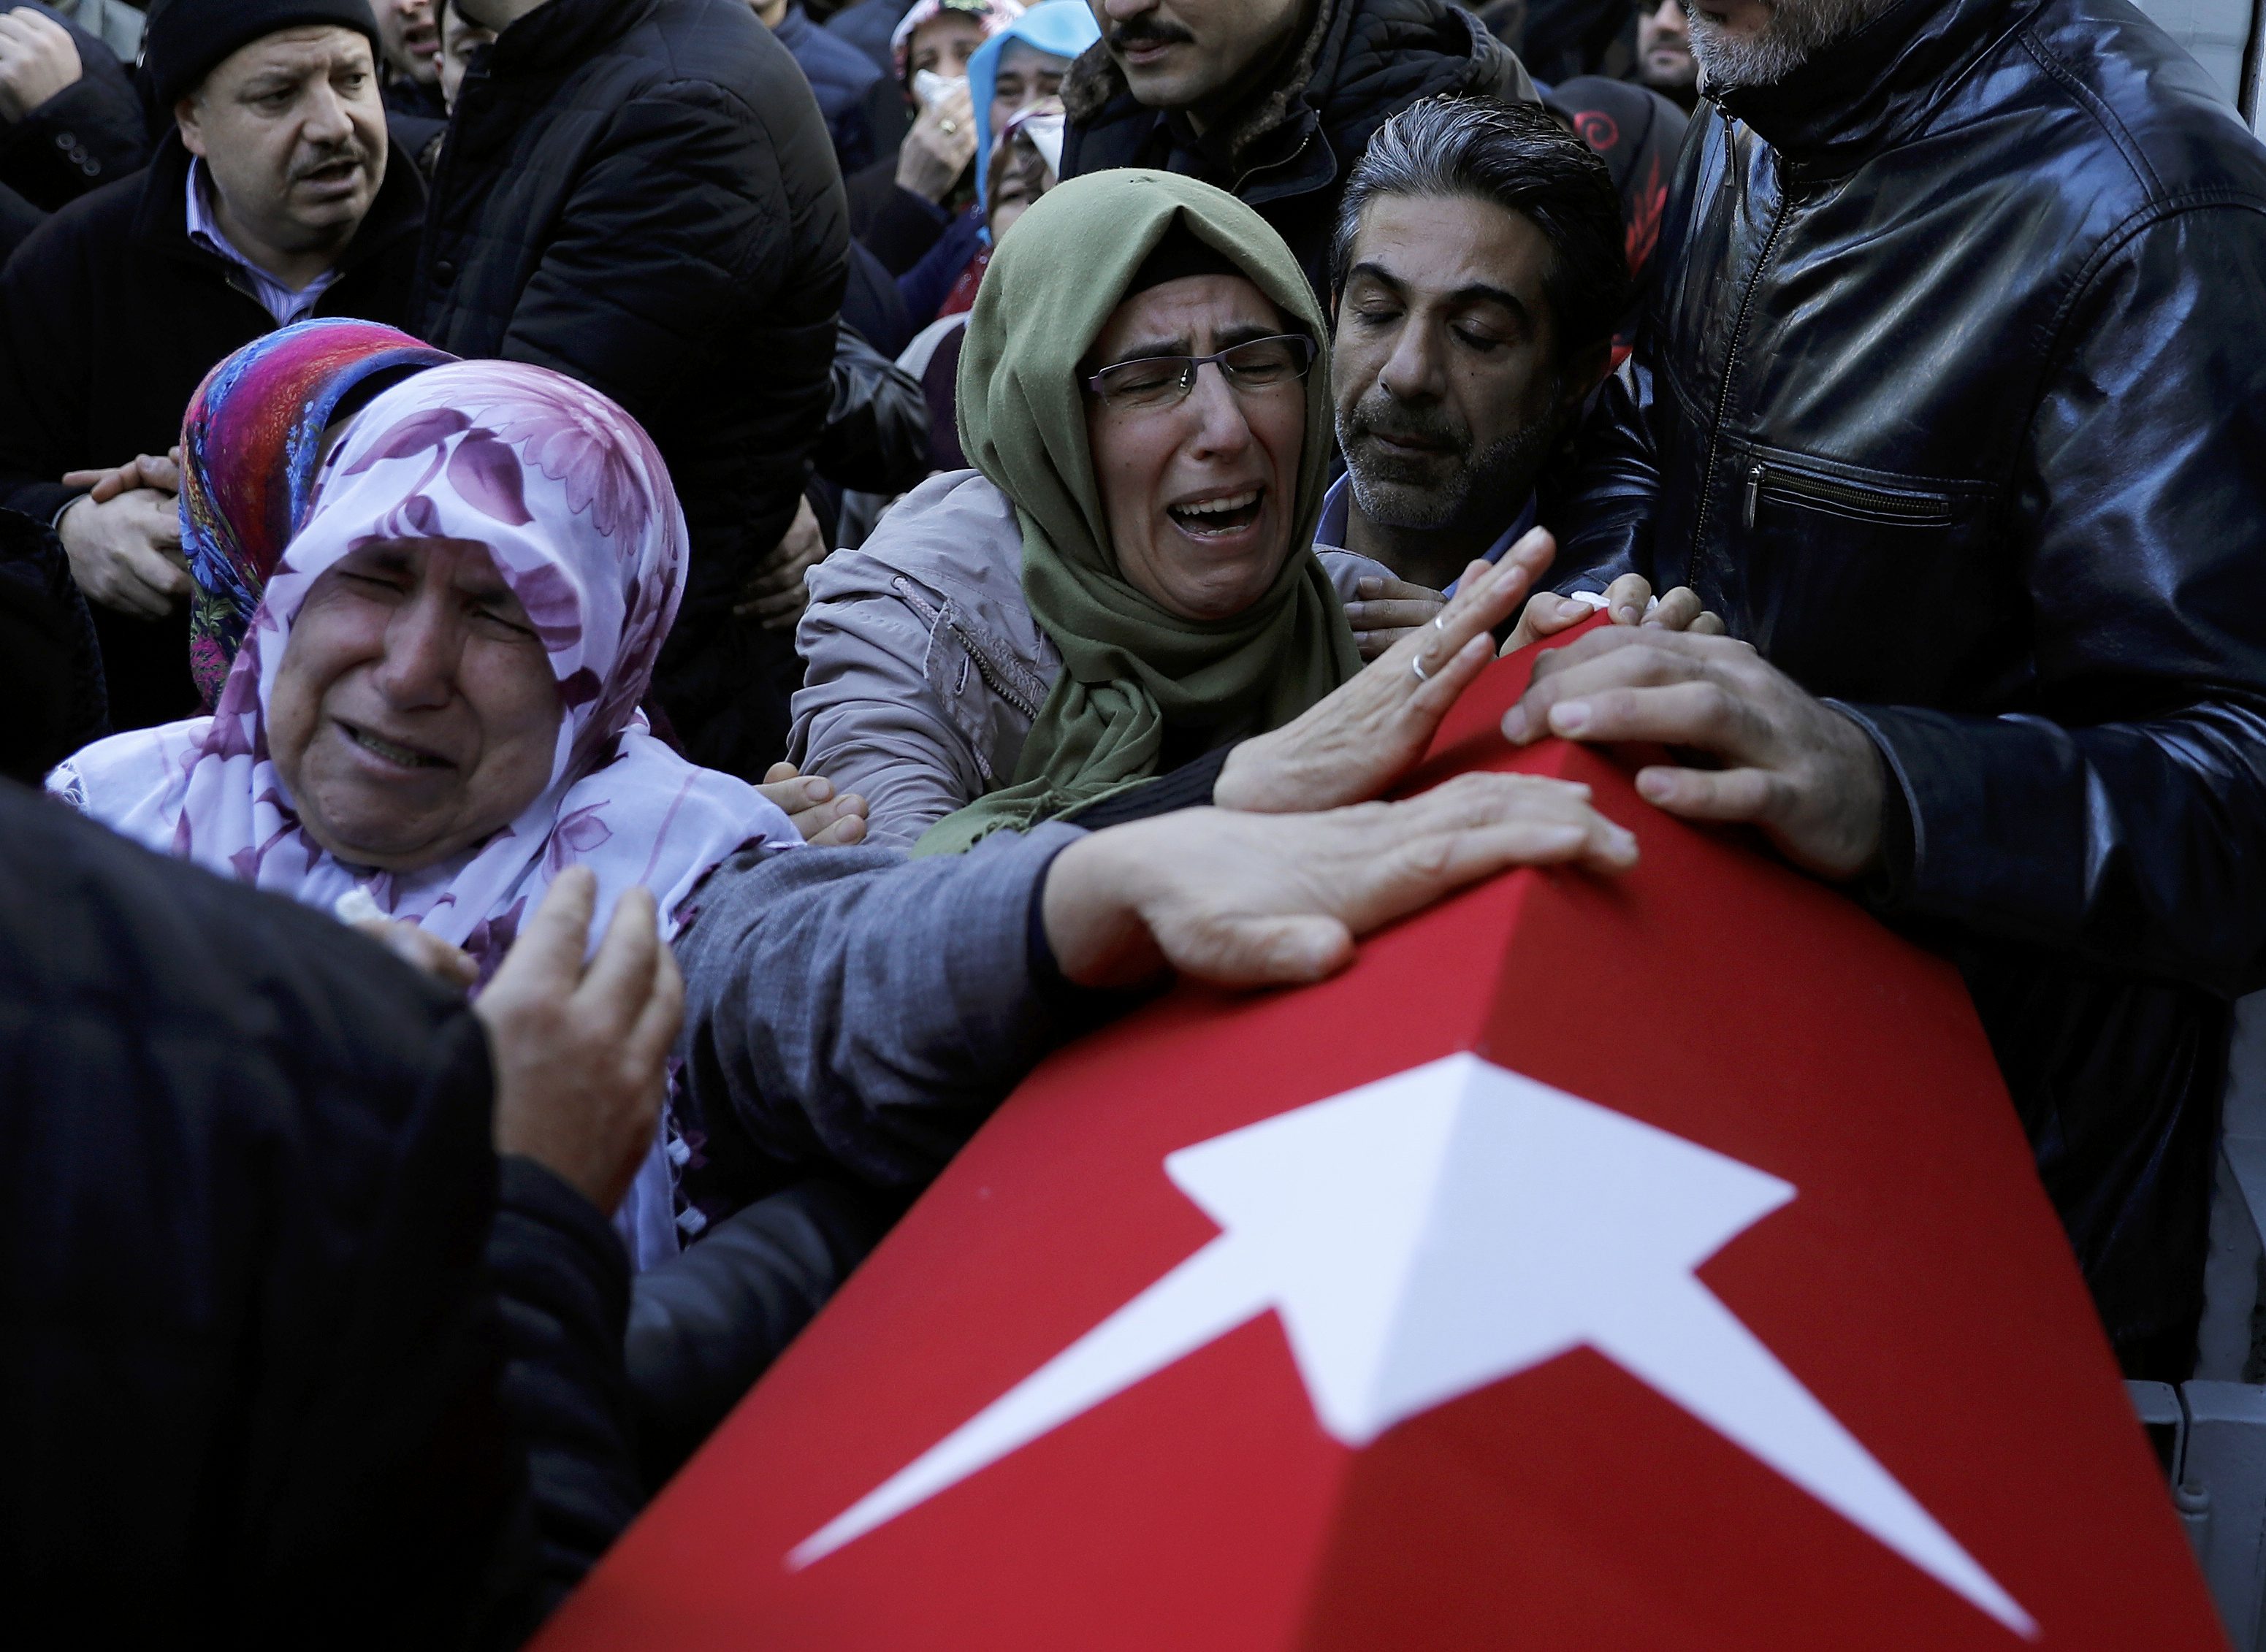 والدة حارس أمن وضحية للهجوم الإرهابى على الملهى الليلى باسطنبول